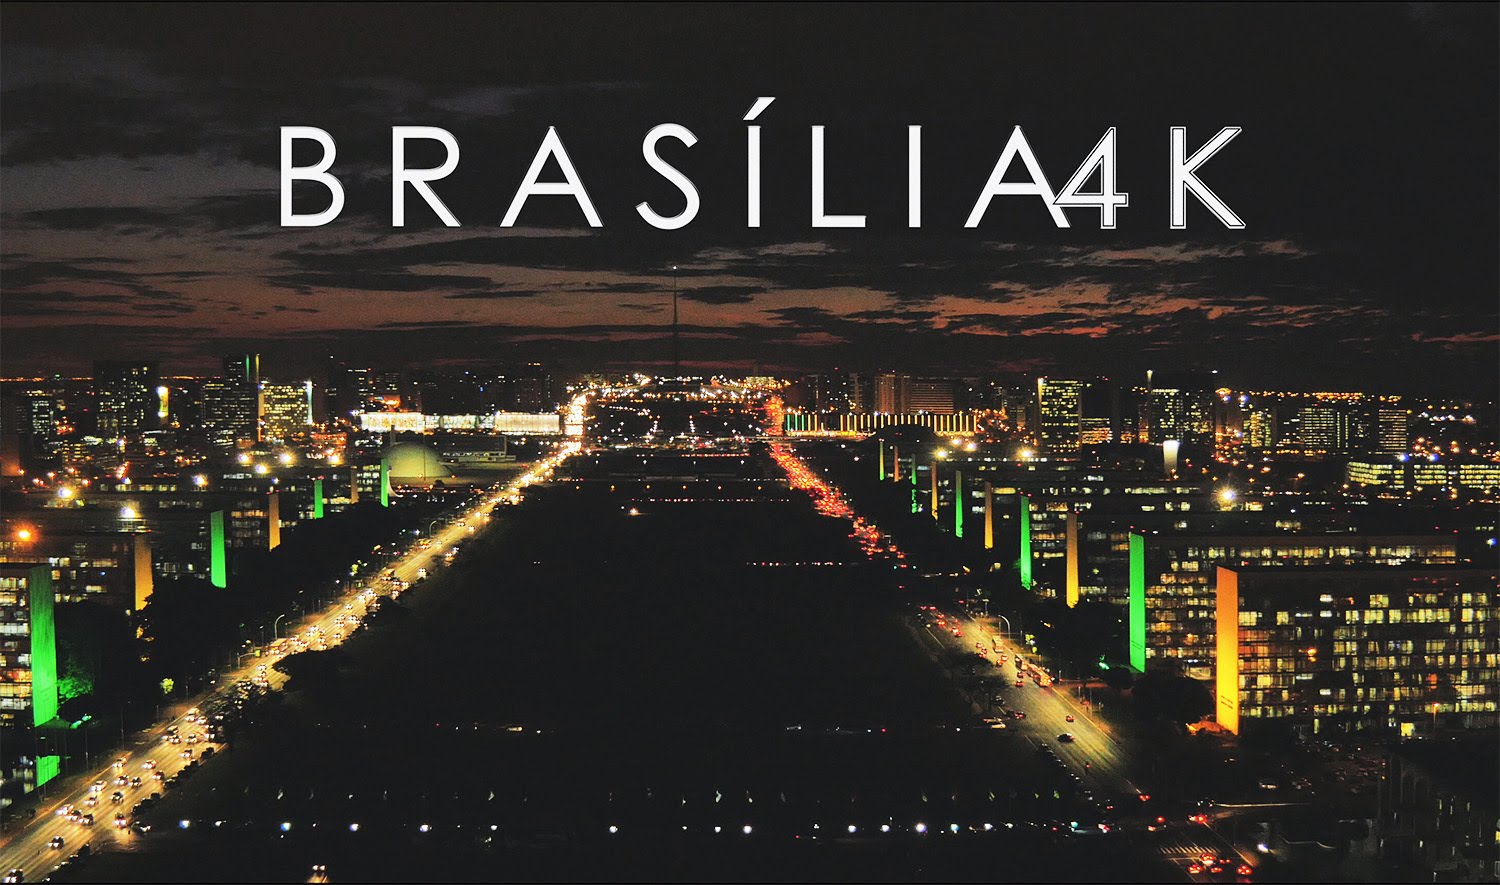 Eu amo Brasilia